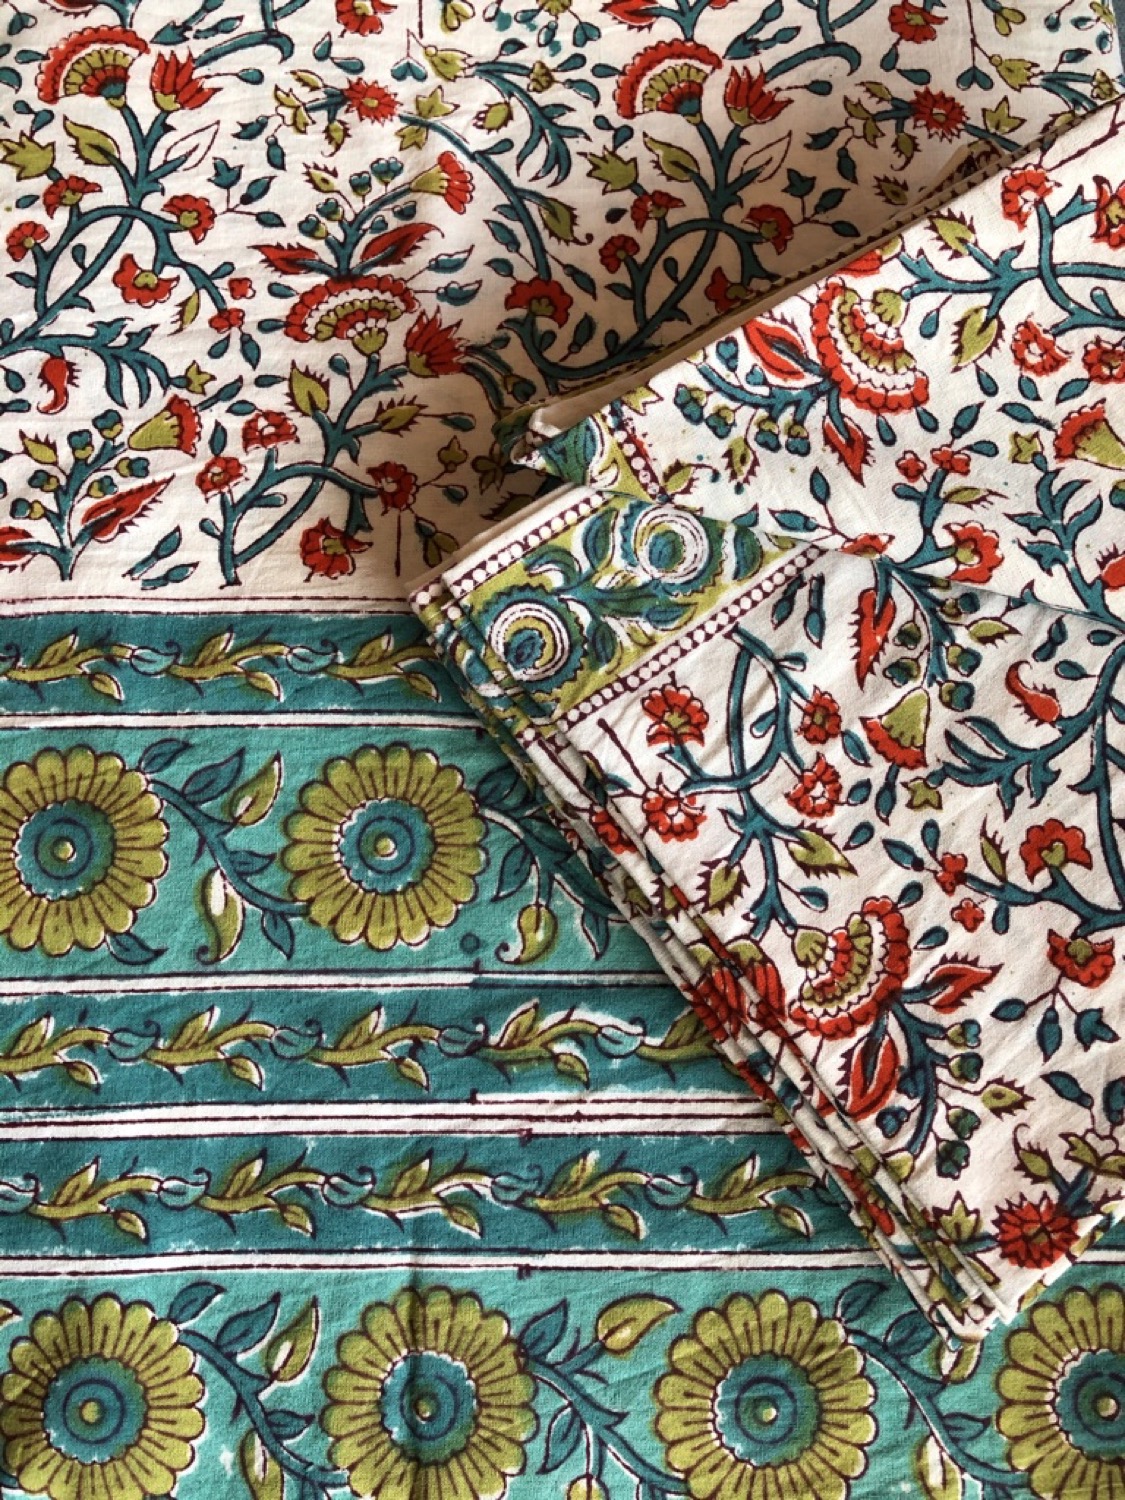 Blockprint tafelkleden uit India met servetten 250 x 200 cm